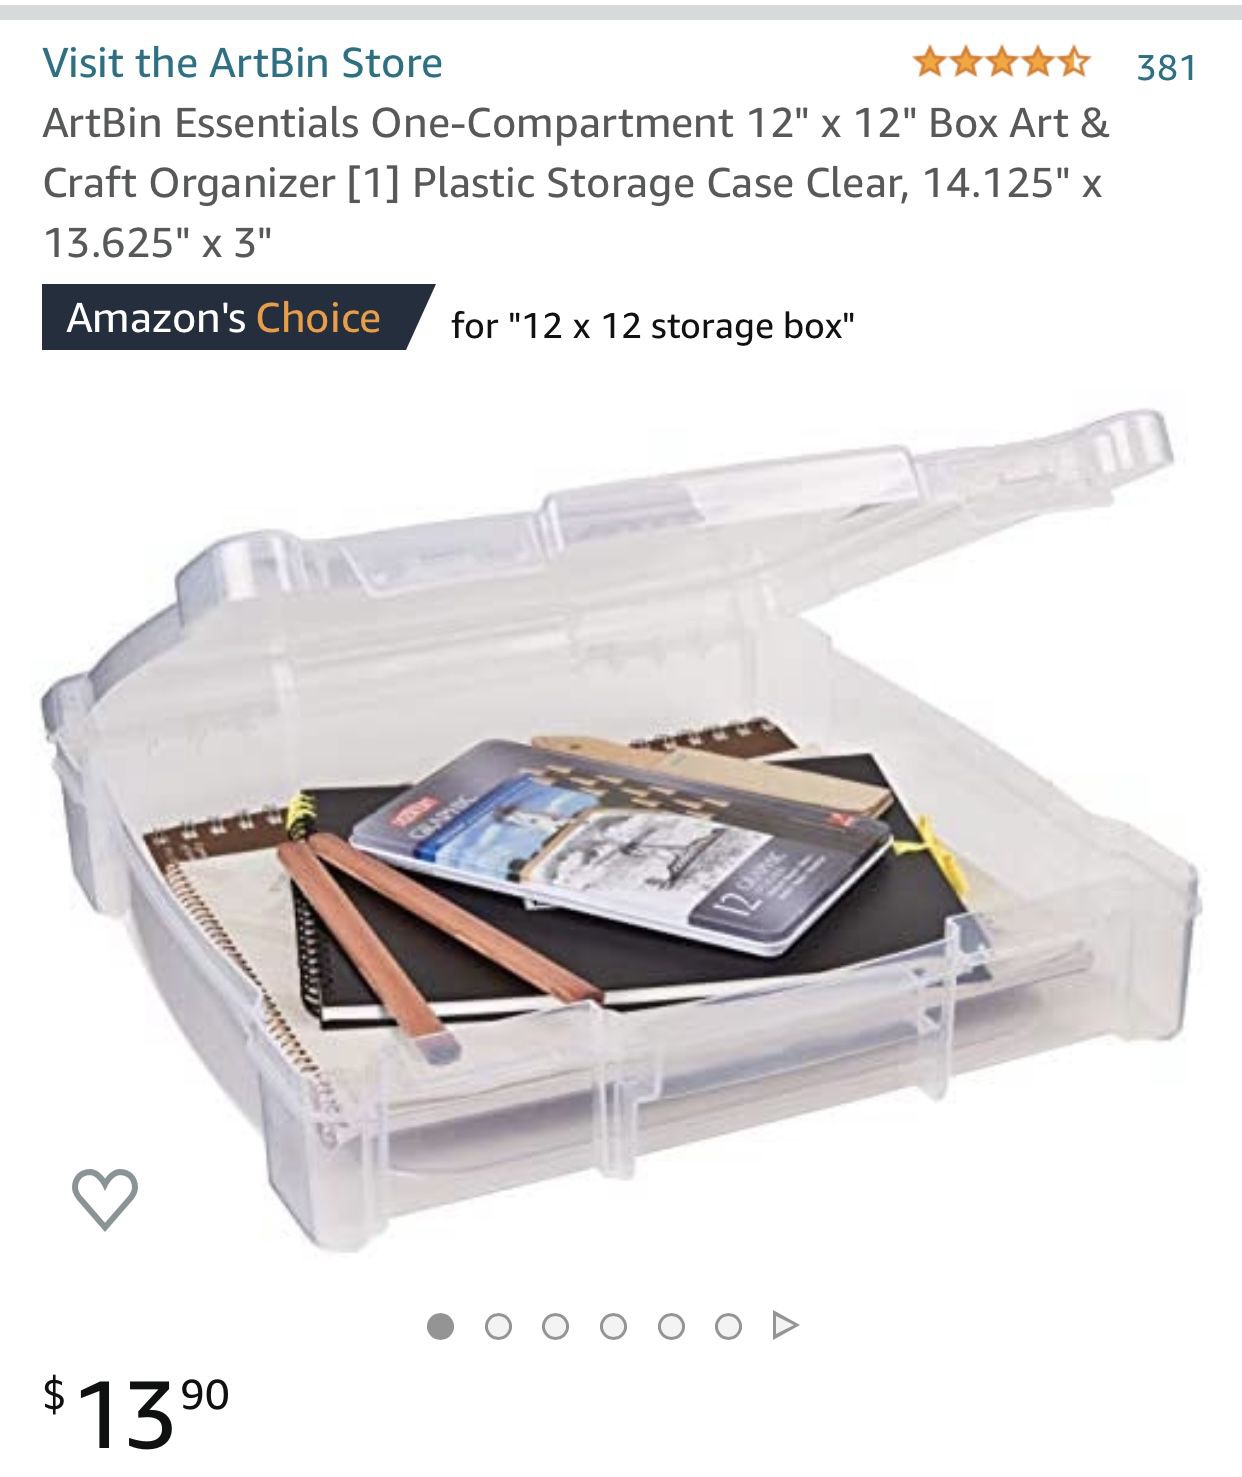 Plastic storage case